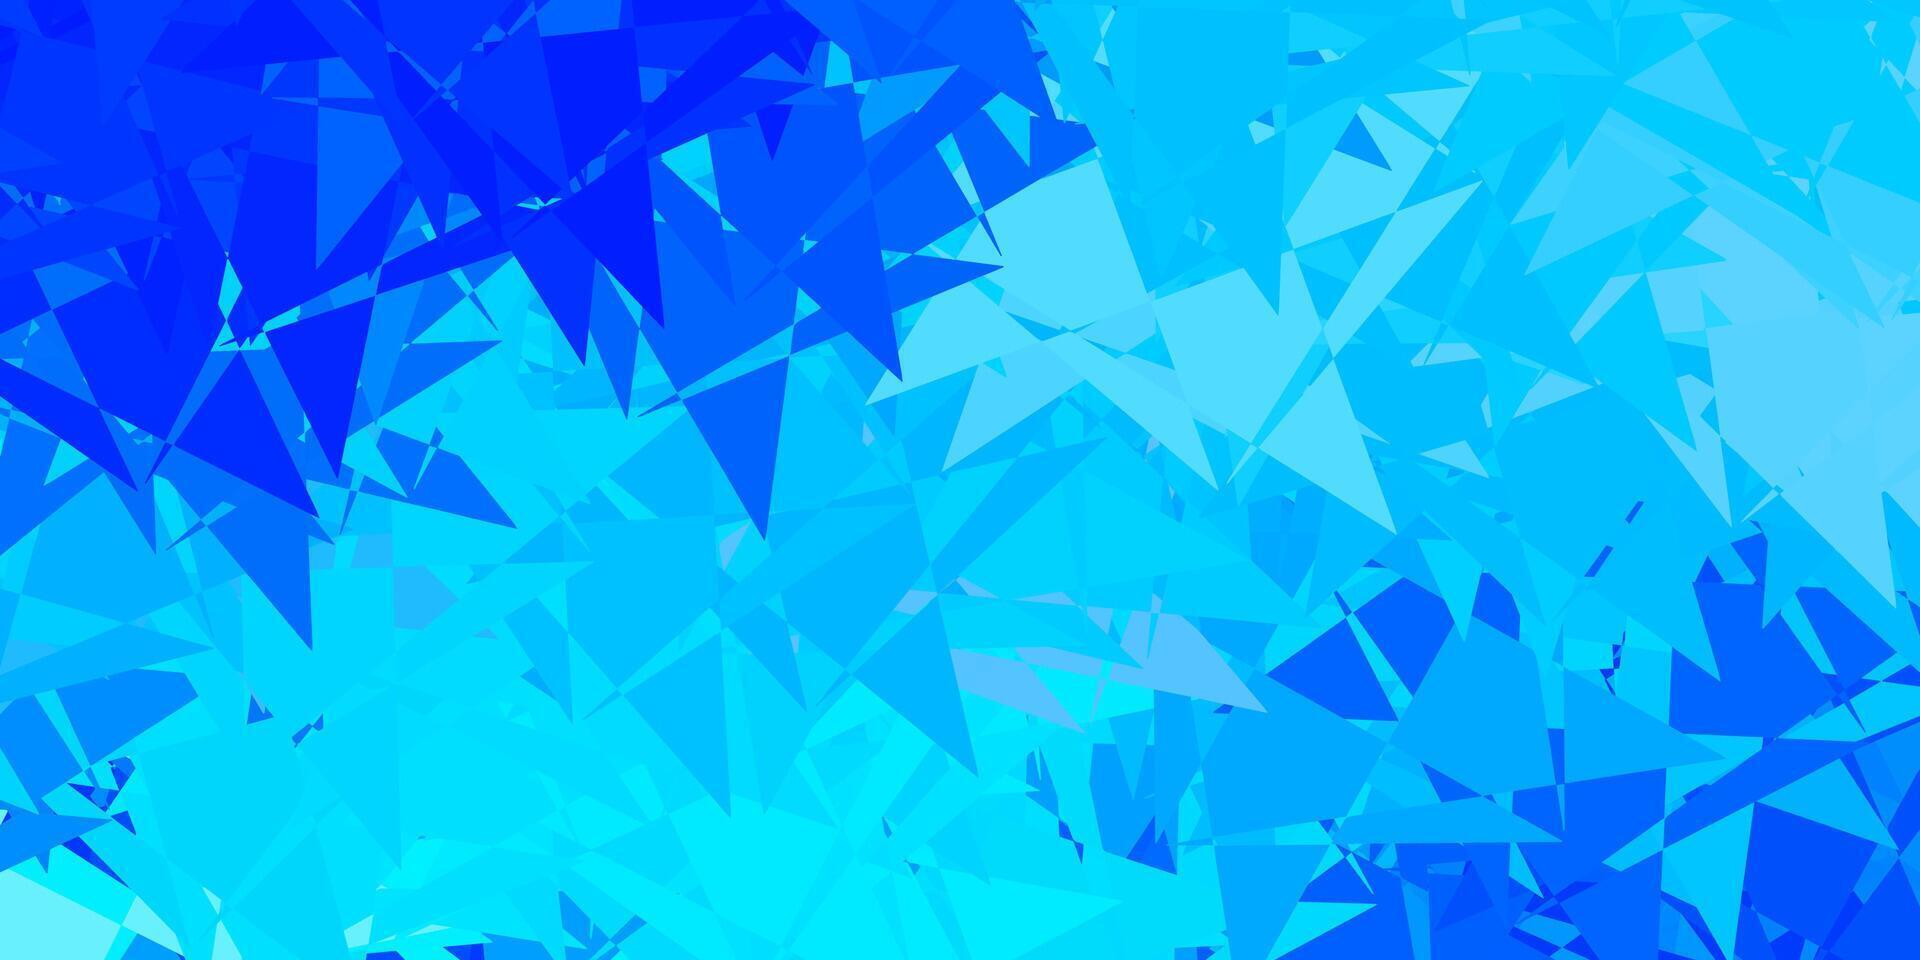 pano de fundo azul claro do vetor com triângulos, linhas.